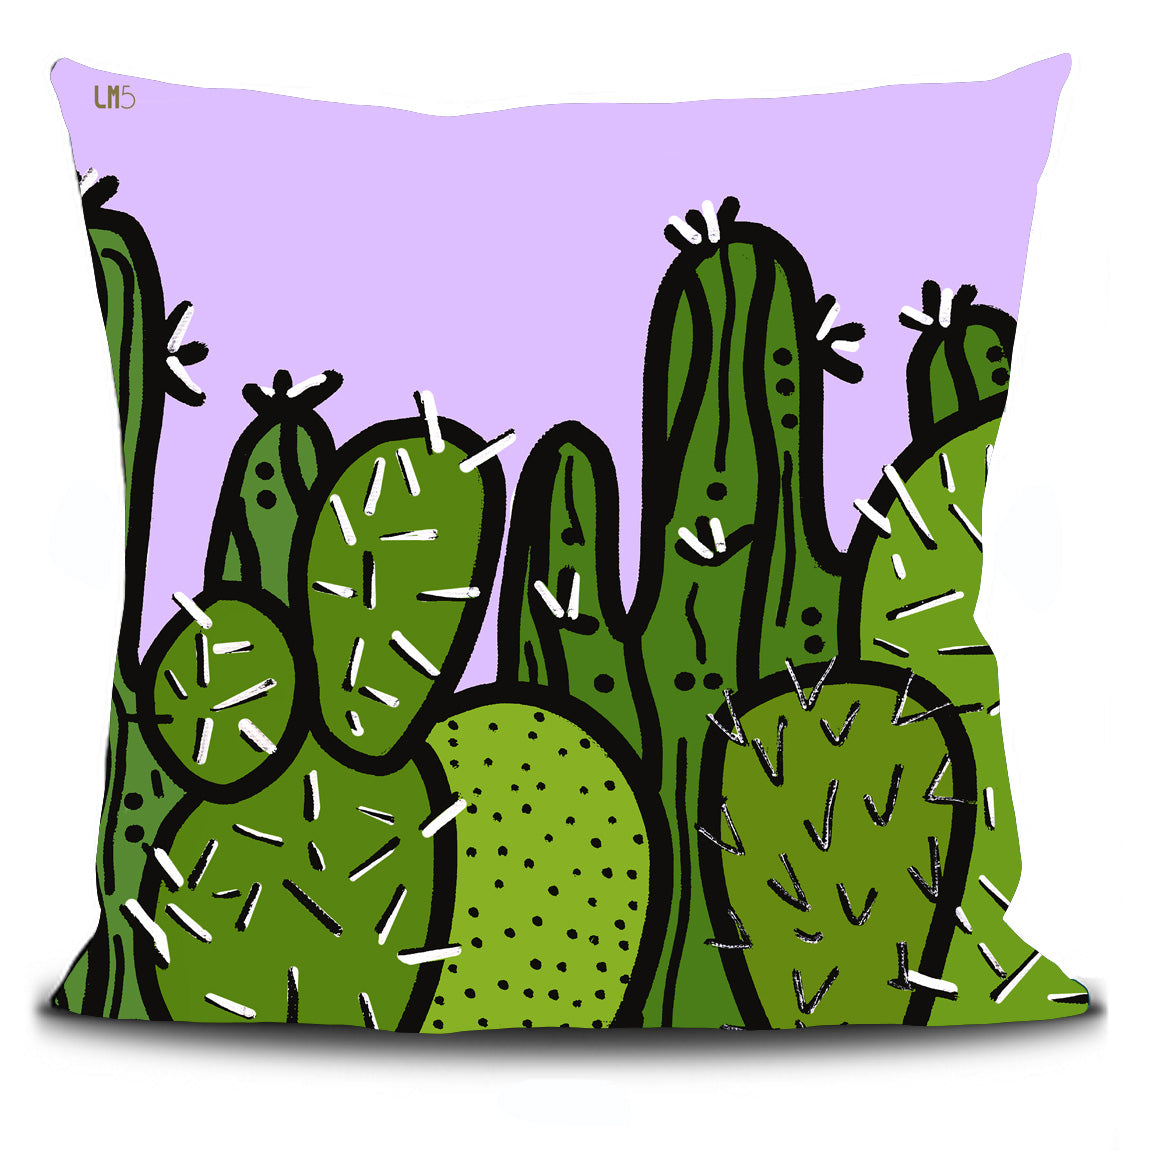 Housse de coussin verso représentant des cactus de différentes nuances de couleurs vertes. Le fond est d'une couleur mauve clair